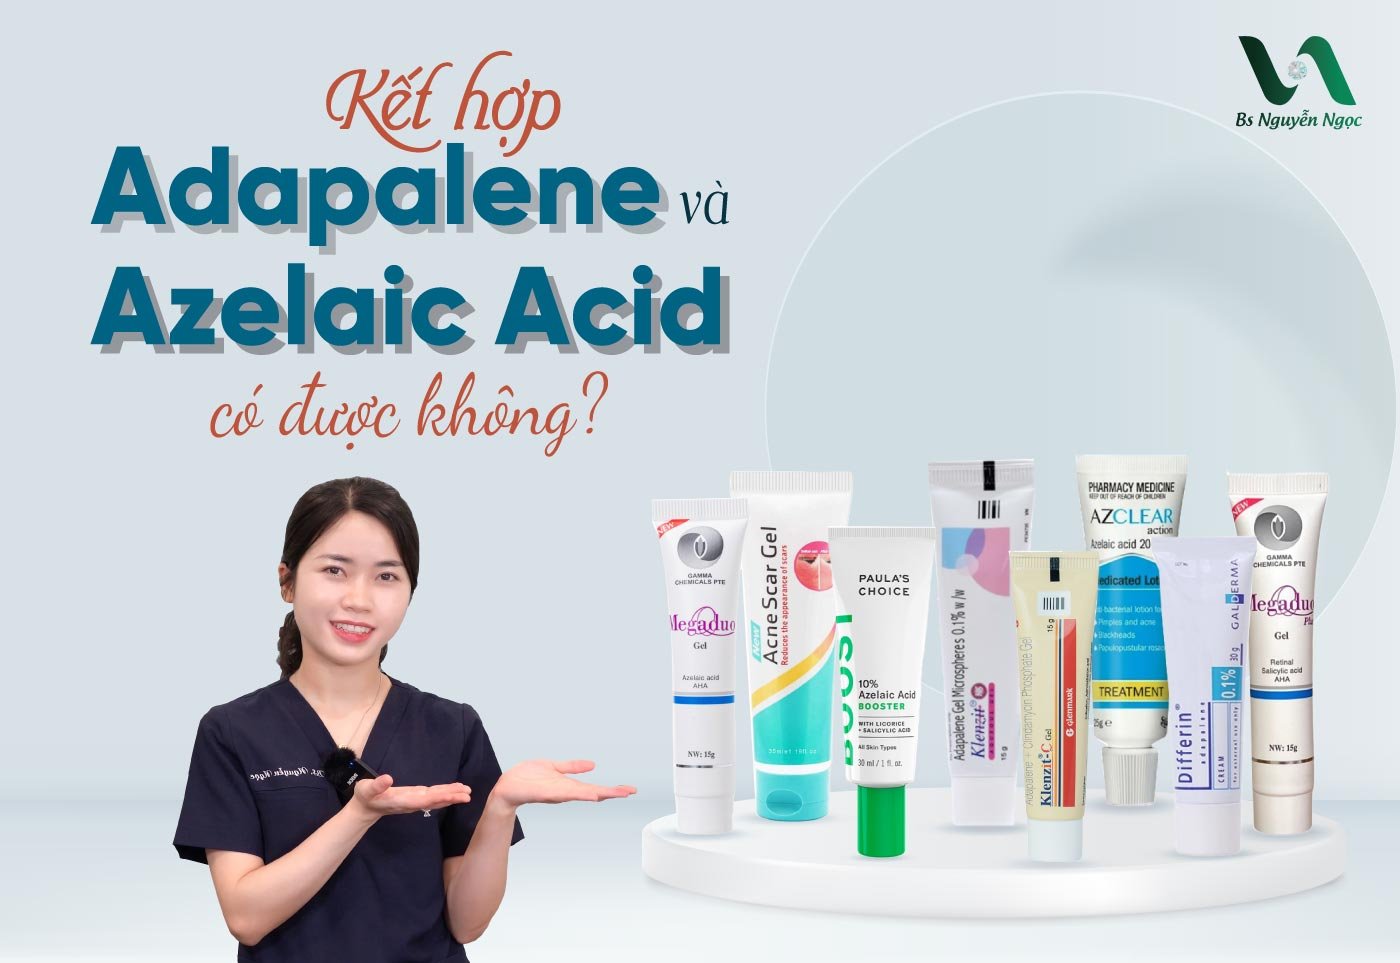 Kết hợp Adapalene và Azelaic Acid có được không?